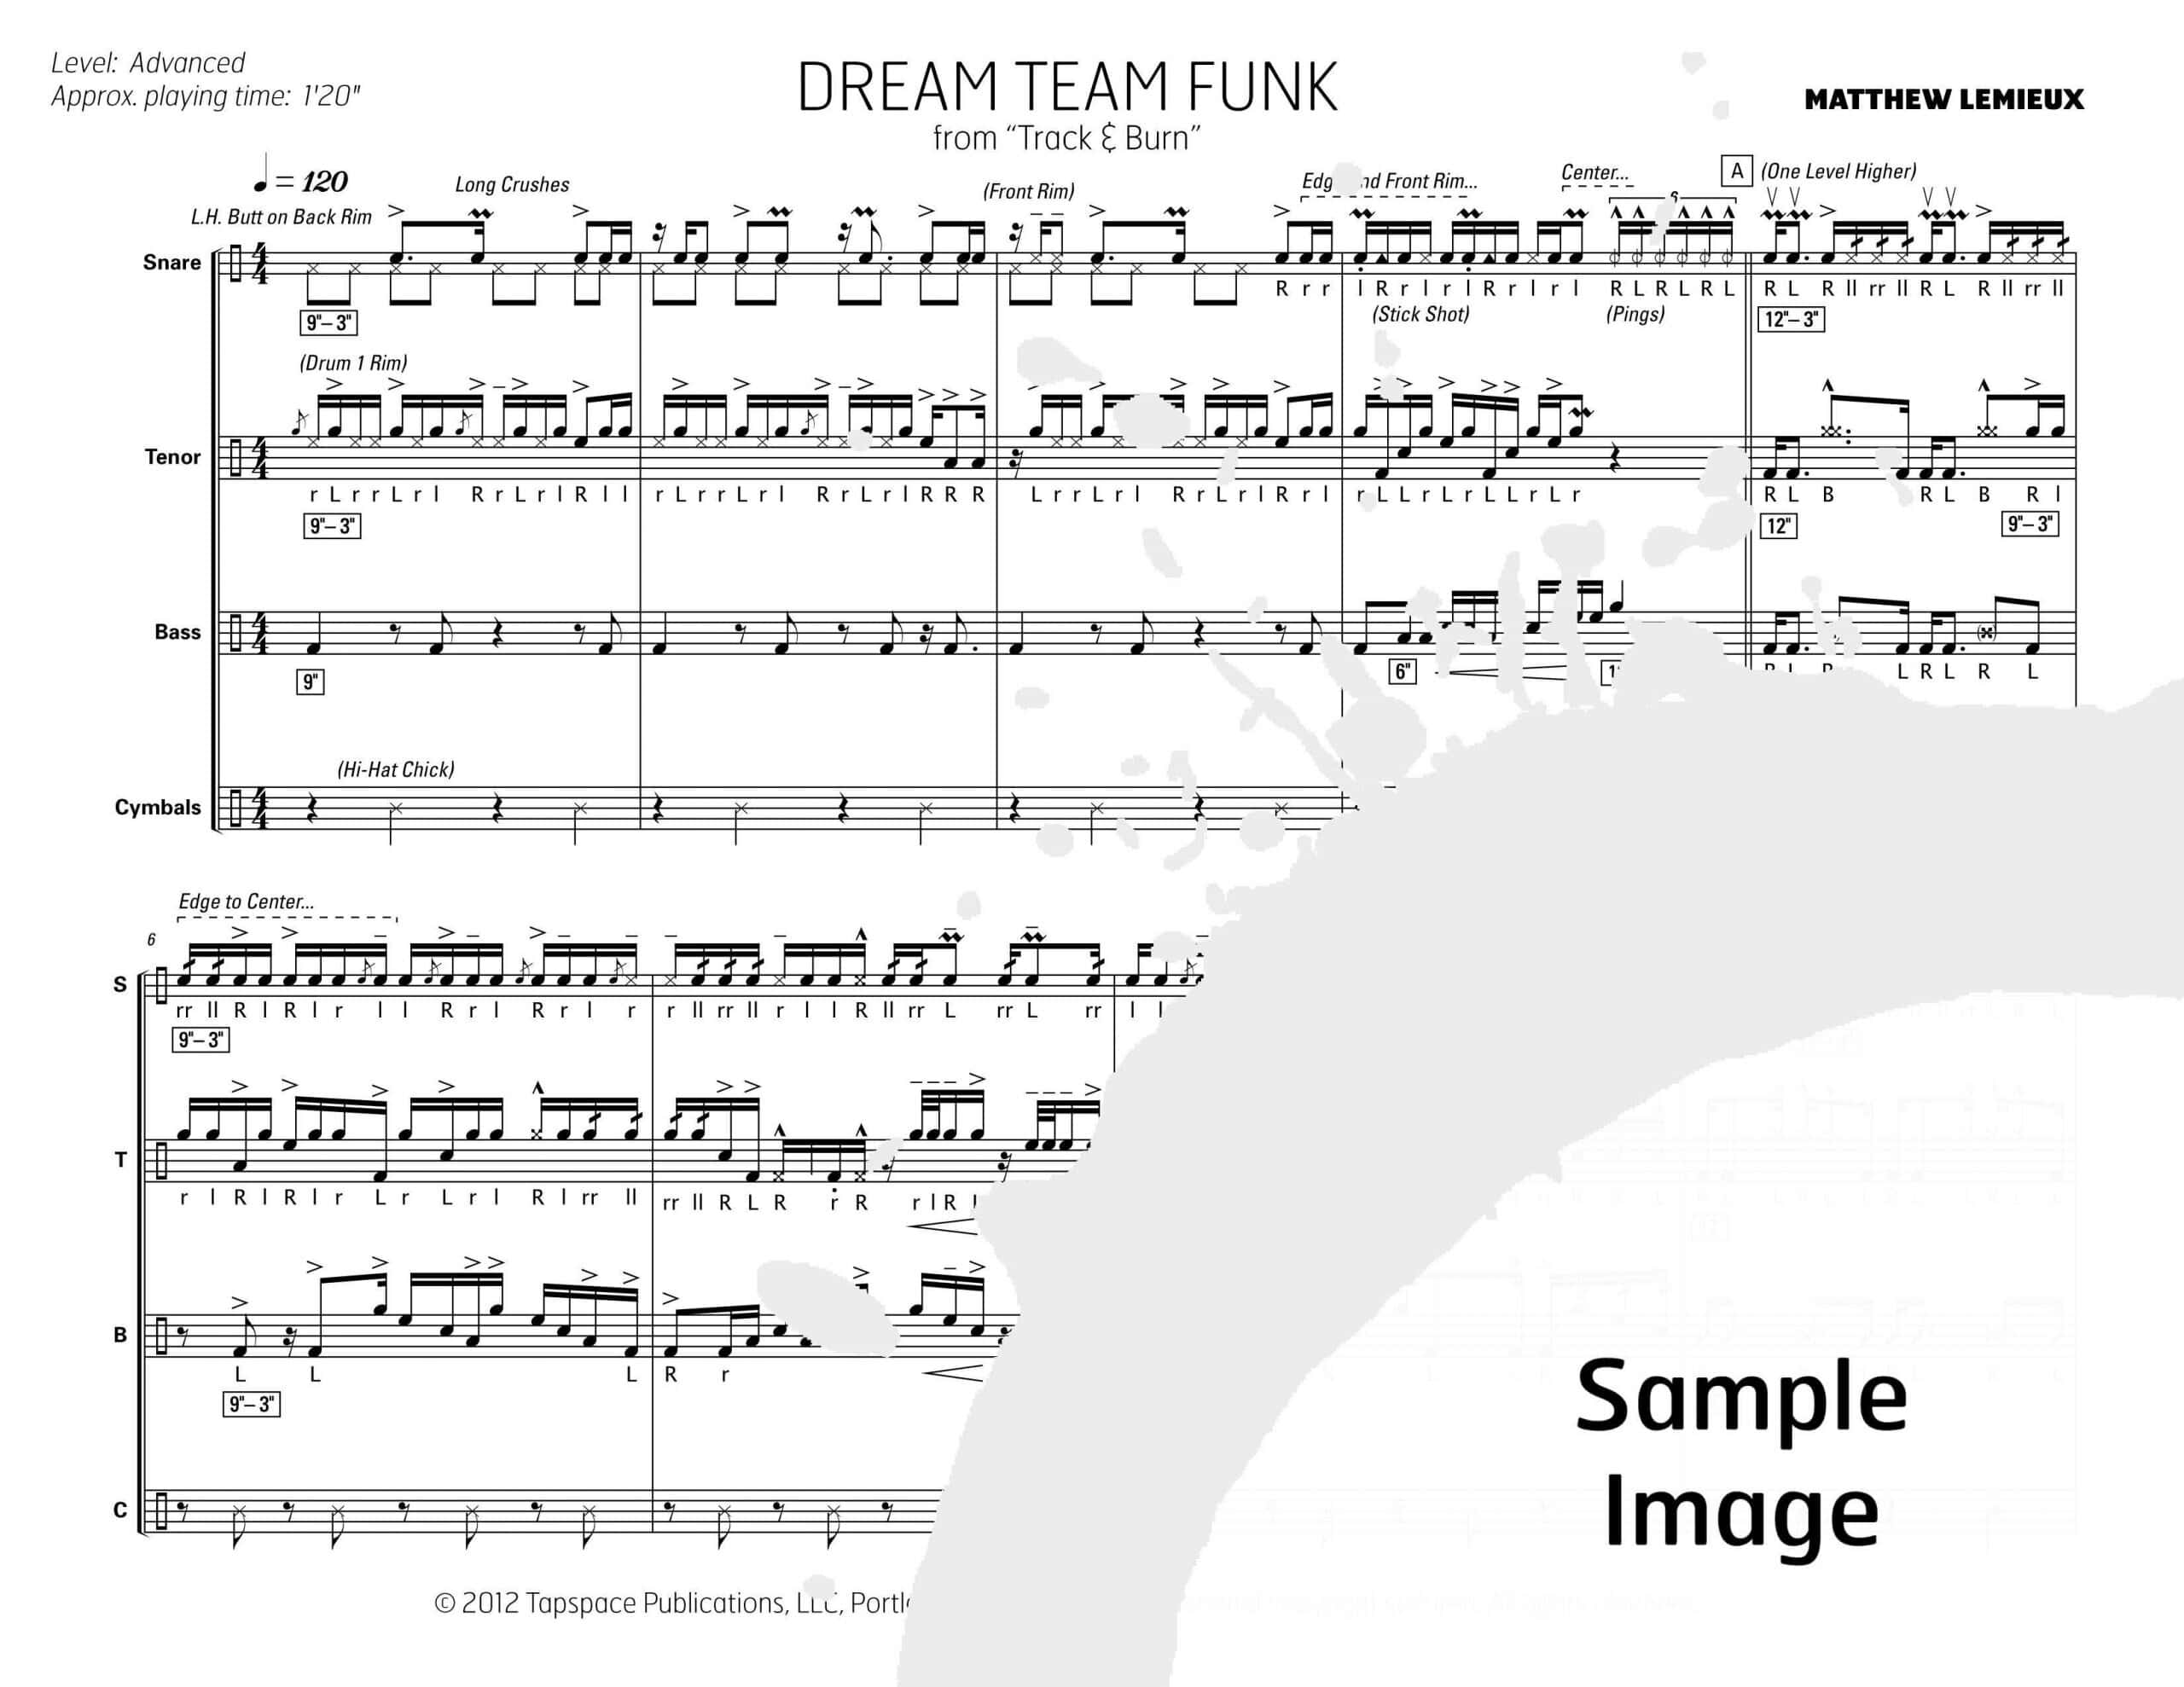 Drem Team Funk by Matthew Lemieux